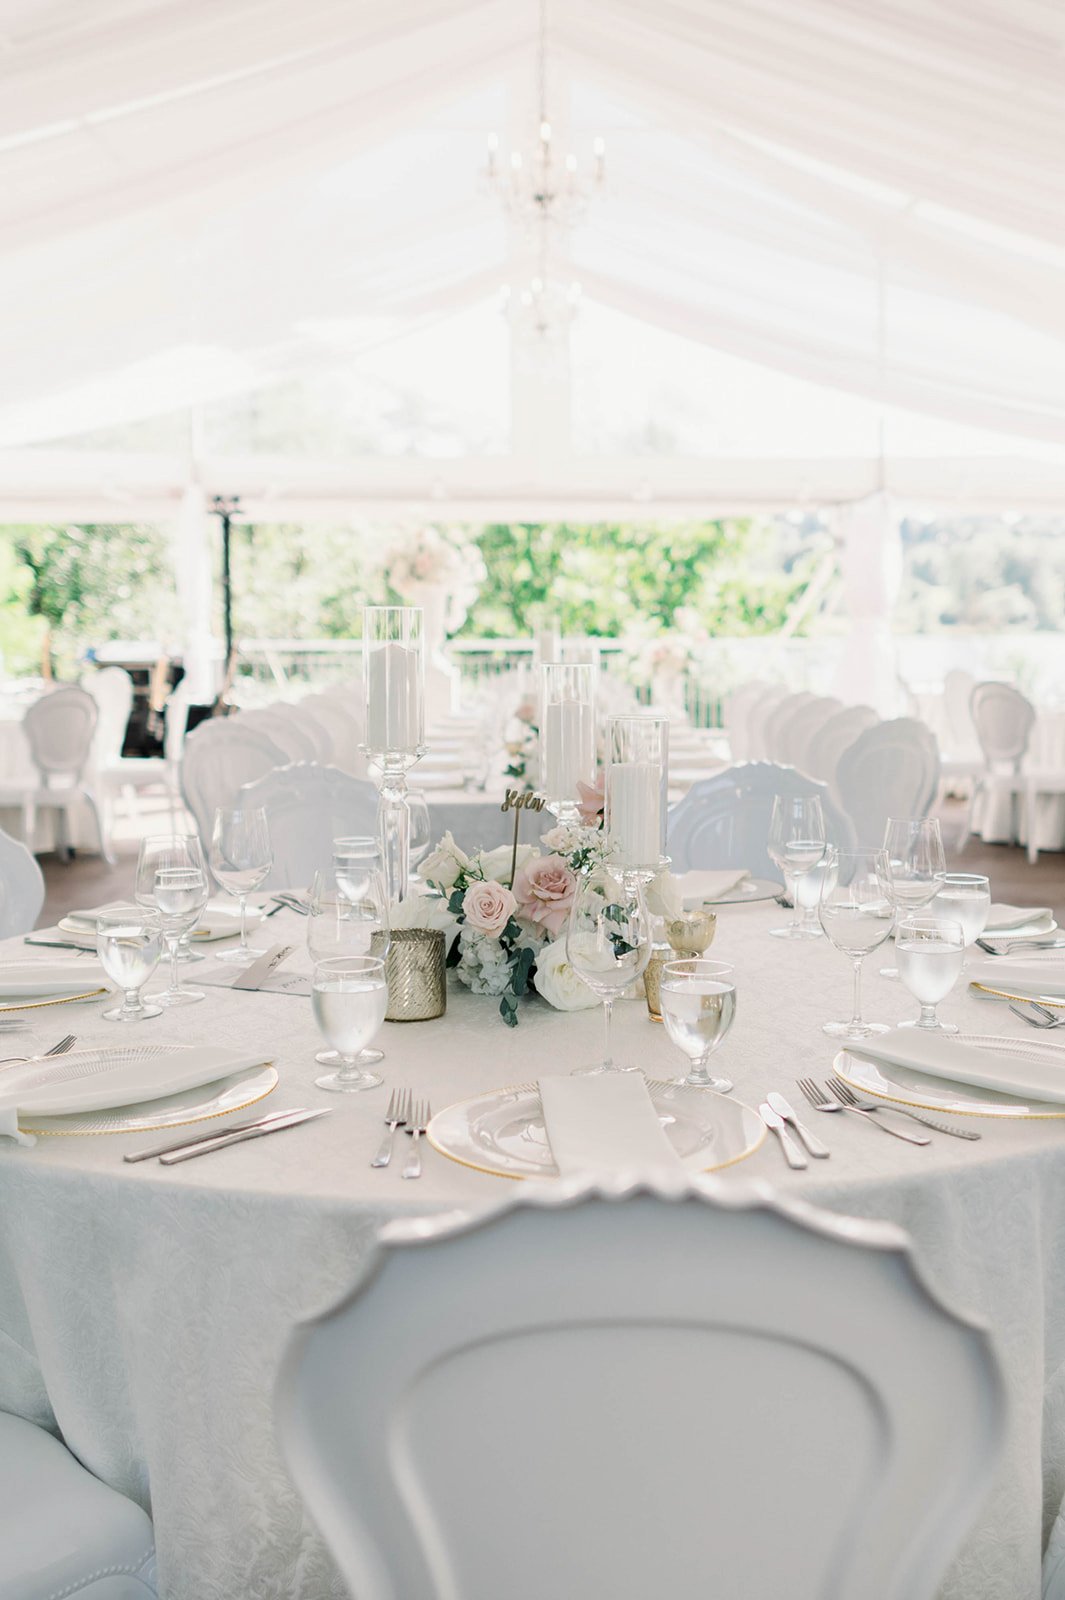 Beautiful floral arrangement and decorative plates sit atop crisp white linens inside Hart House wedding tent.  